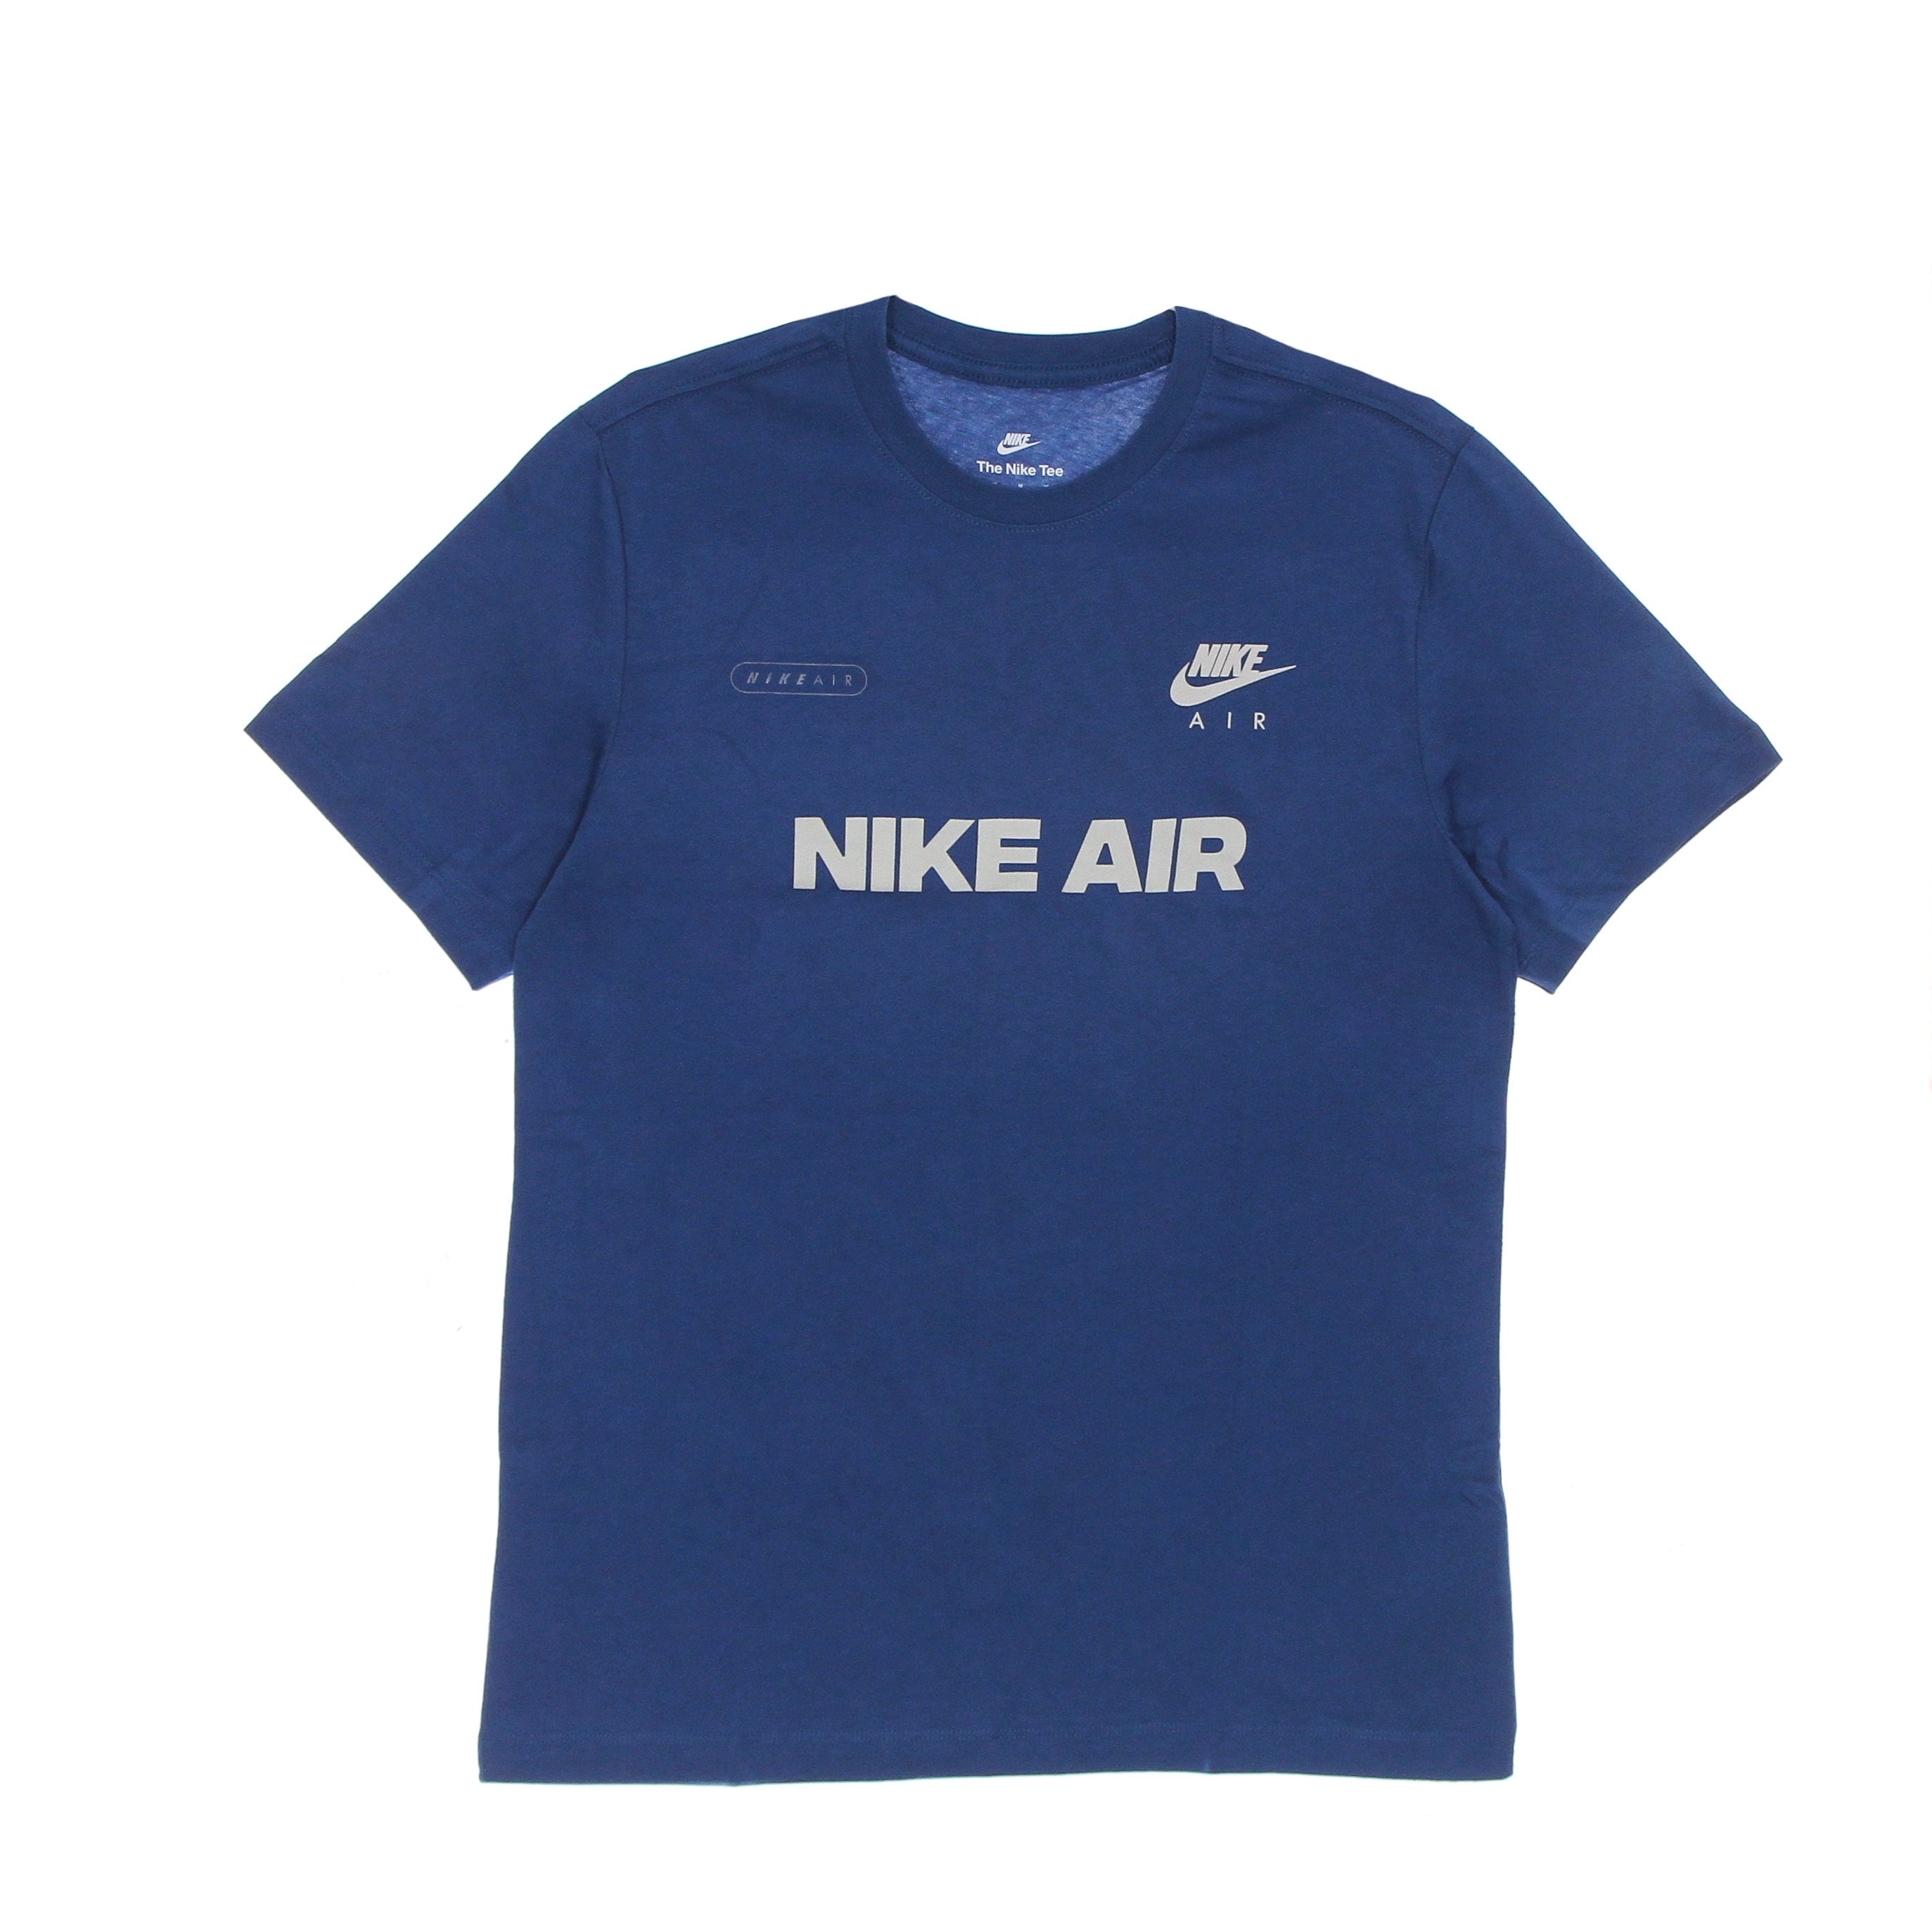 Nike, Maglietta Uomo Air 1 Tee, Dk Marina Blue